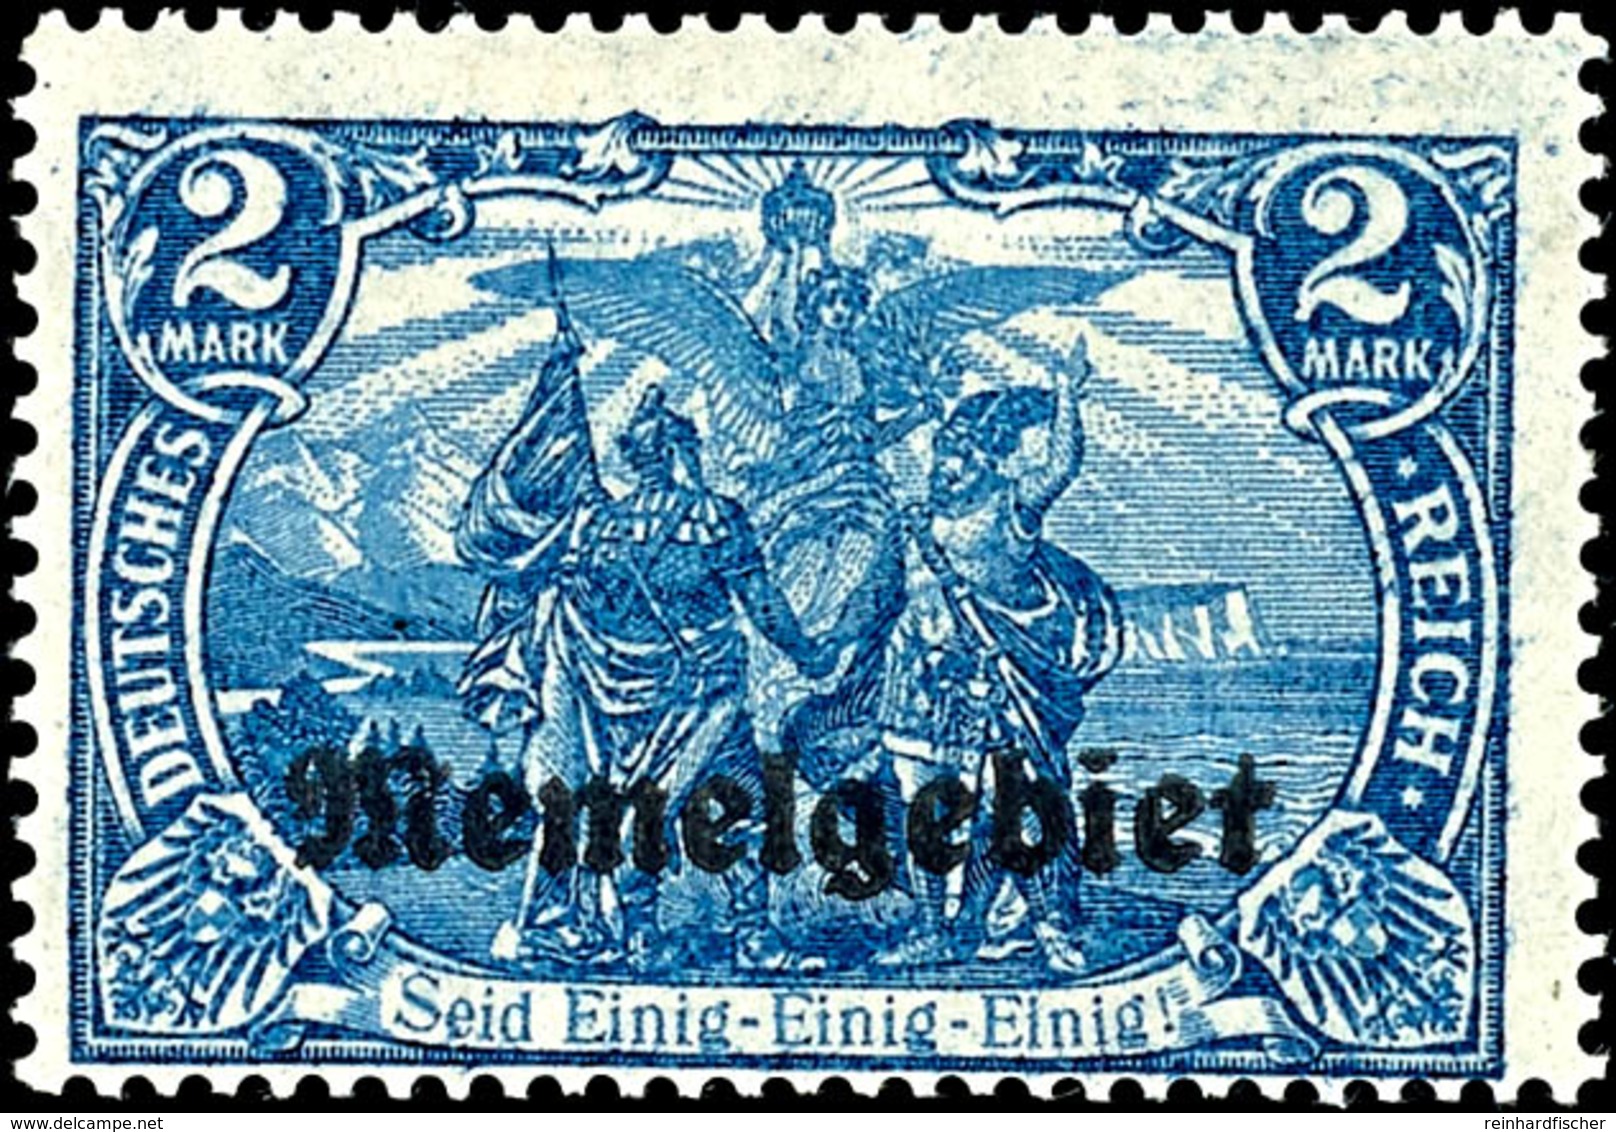 2 Mark Deutsches Reich Blau Mit Aufdruck "Memelgebiet", Abart "26:17 Statt 25:17 Zähnungslöcher", Ungebrauchtes Luxusstü - Memelgebiet 1923